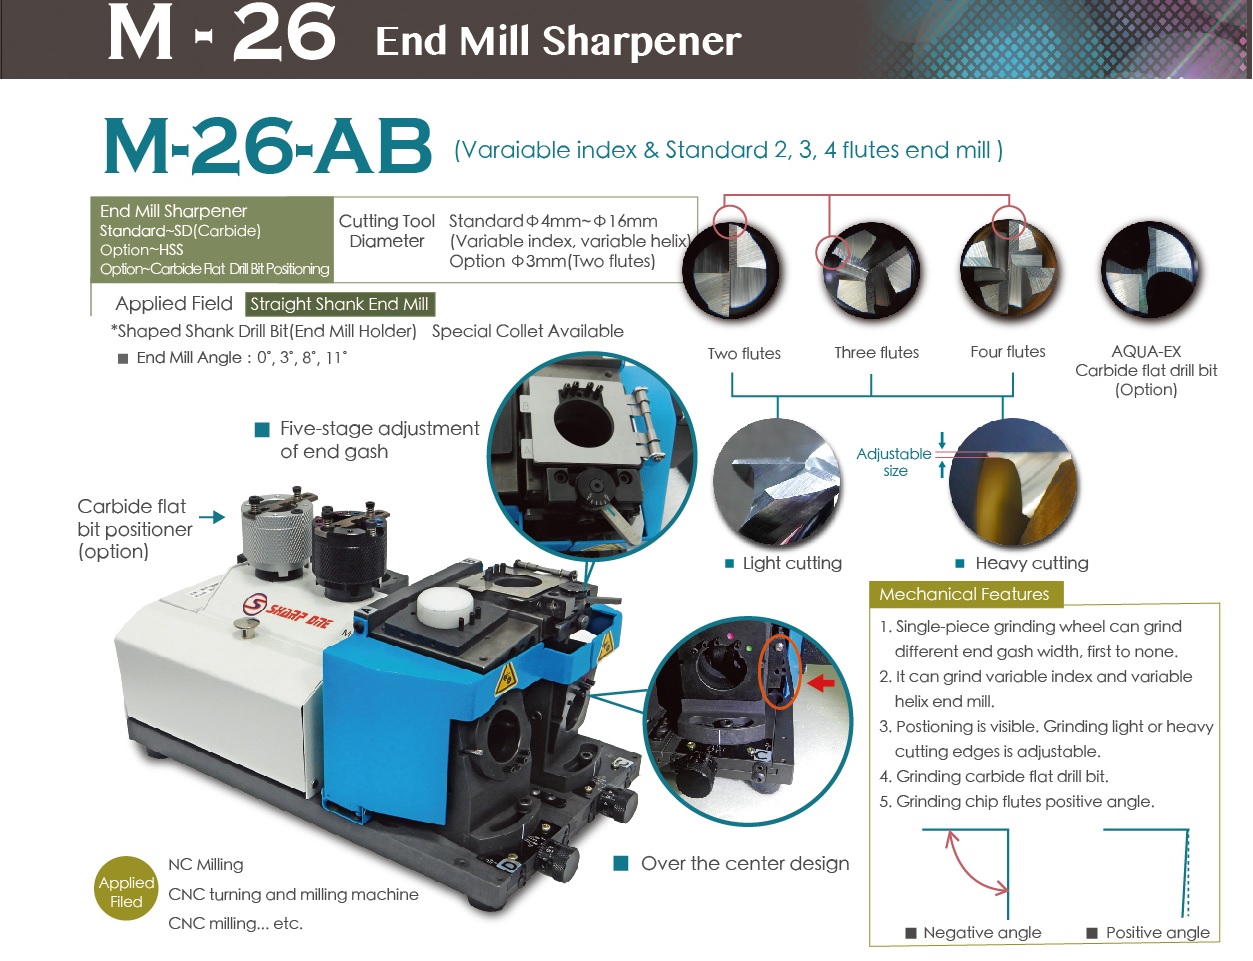 End Mill Sharpener M-26-AB -M-26-AB